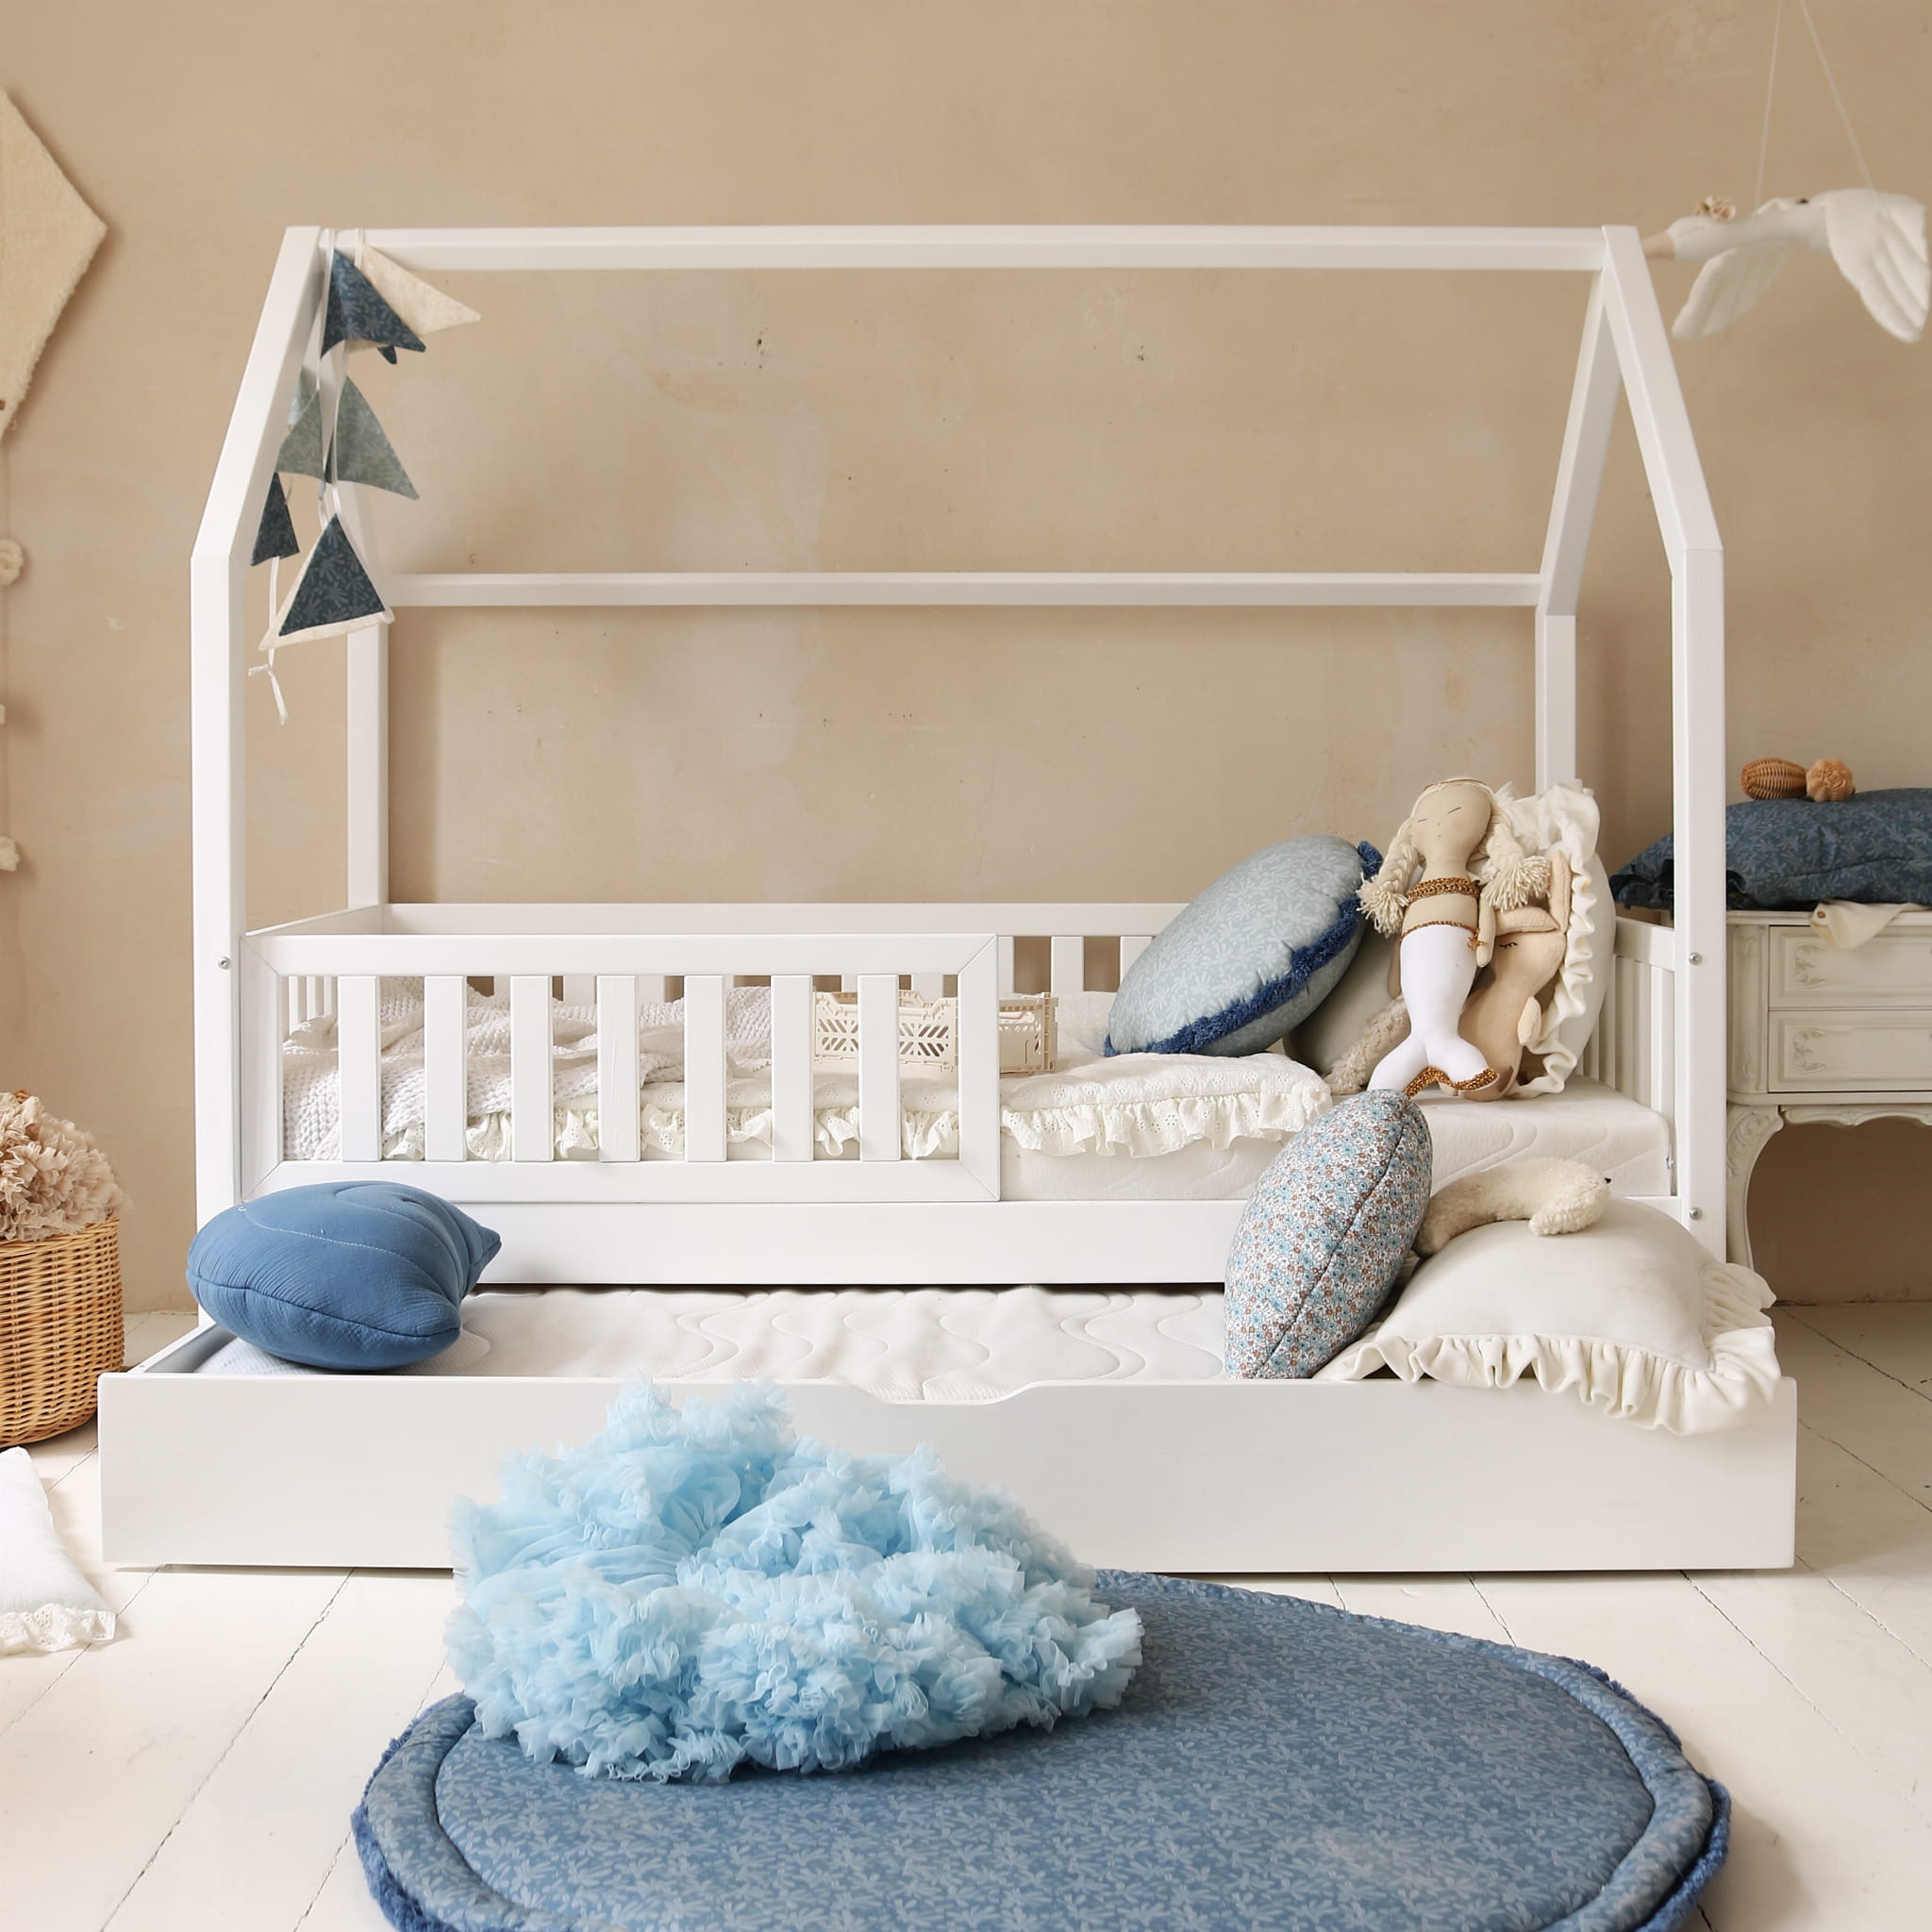 Hussäng Bianca vit 90x190 cm med extra säng En vit hussäng med sidoskydd och extrasäng med dekorationer i blå toner